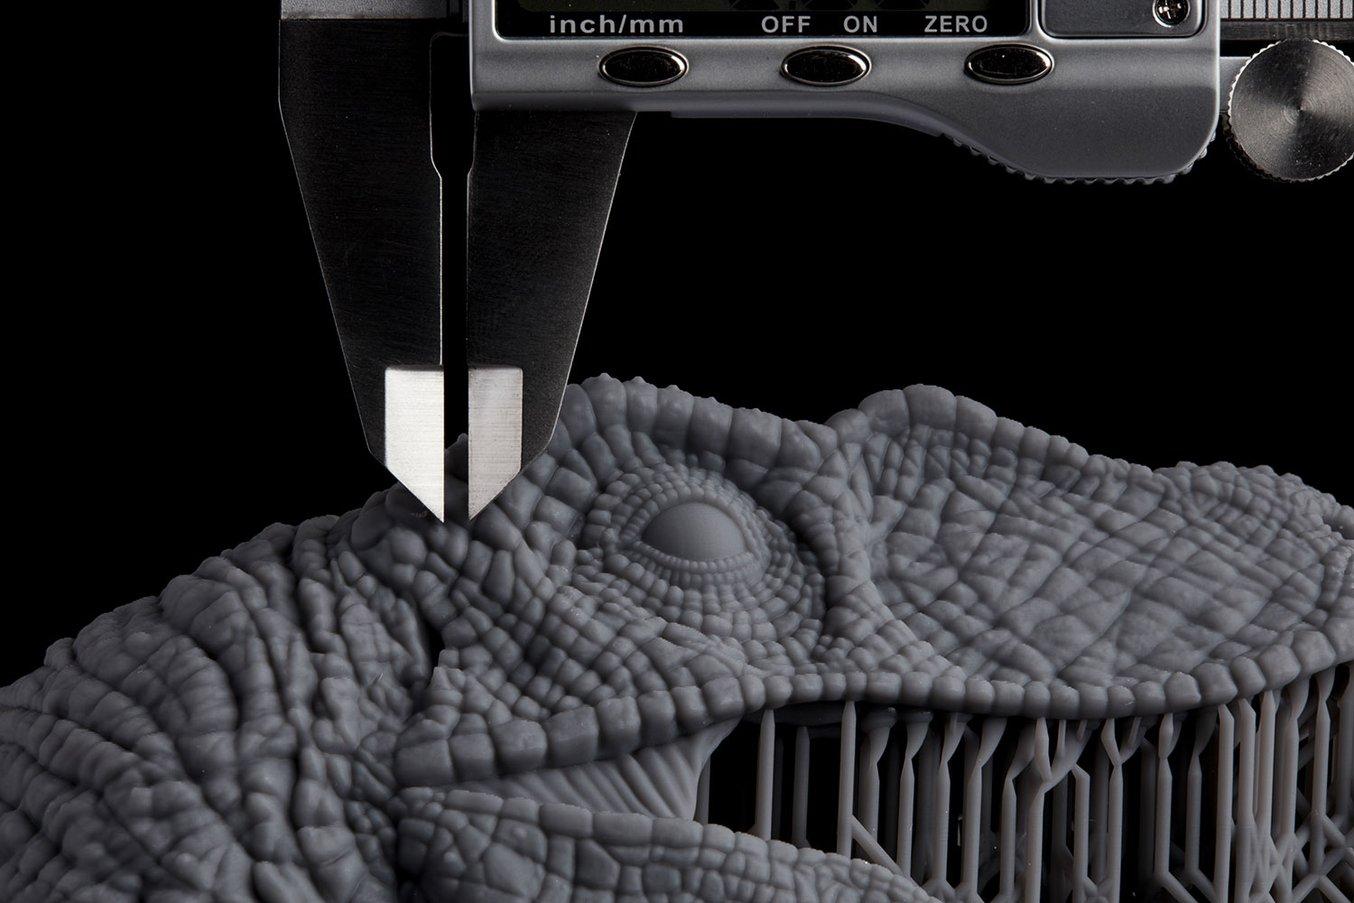 Velociraptor model 3D printed in Grey Resin